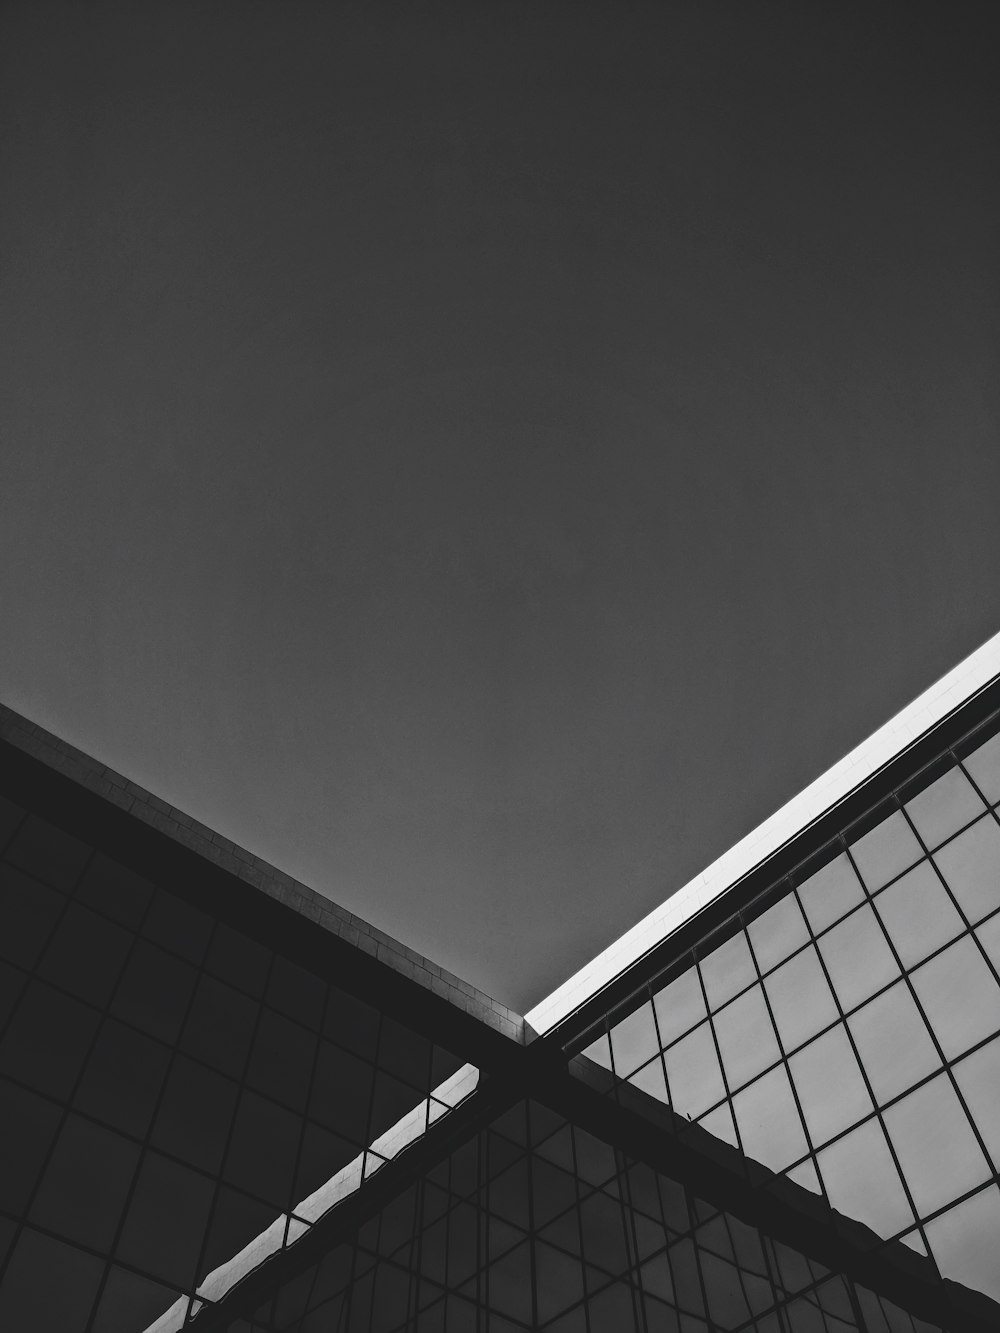 una foto in bianco e nero del tetto di un edificio